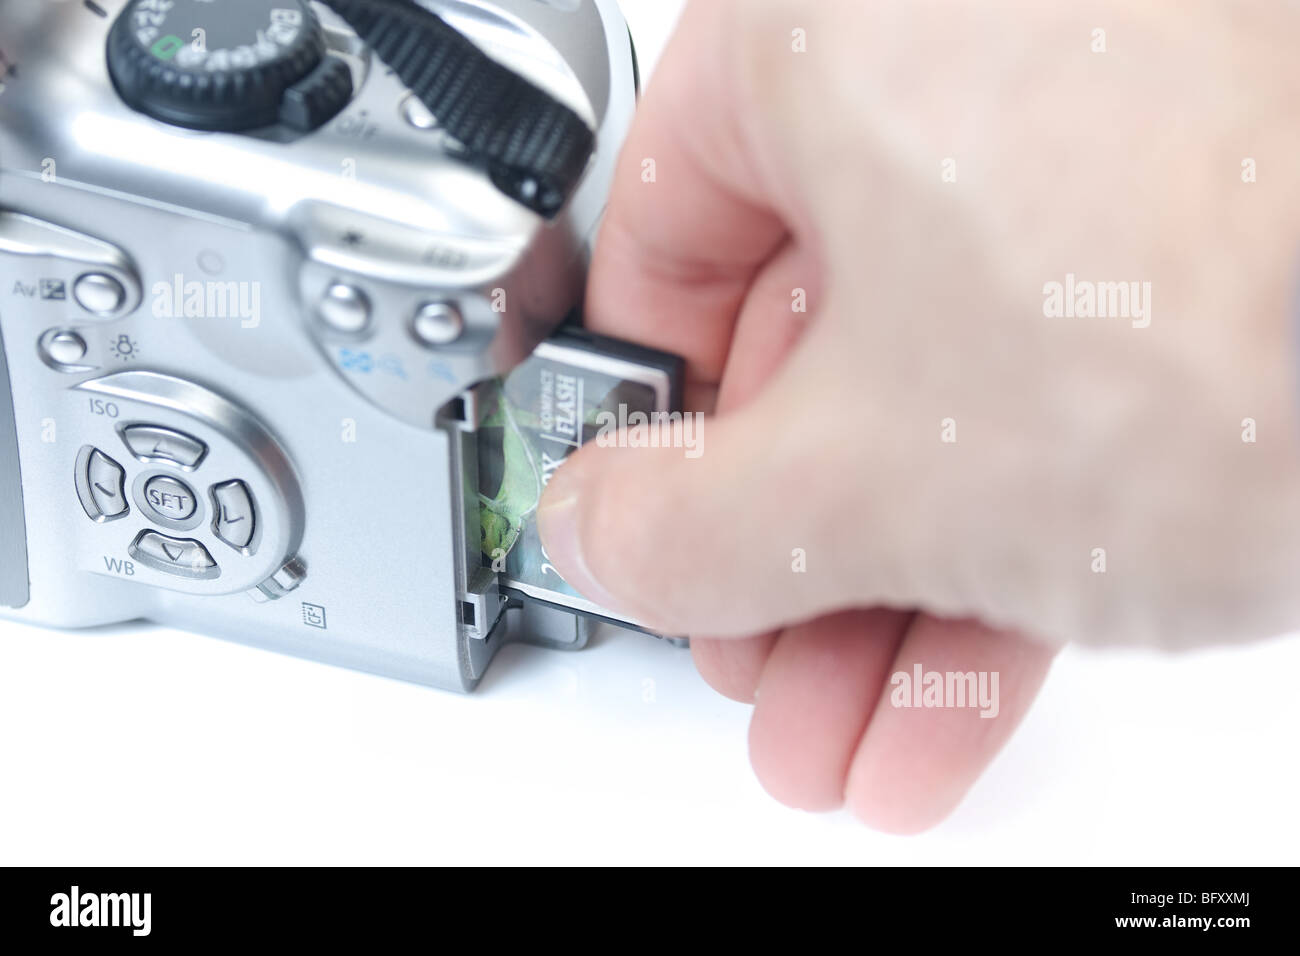 Eine Nahaufnahme einer Hand Einfügen einer compact flash Memory Card in eine digitale SLR-Kamera. Stockfoto